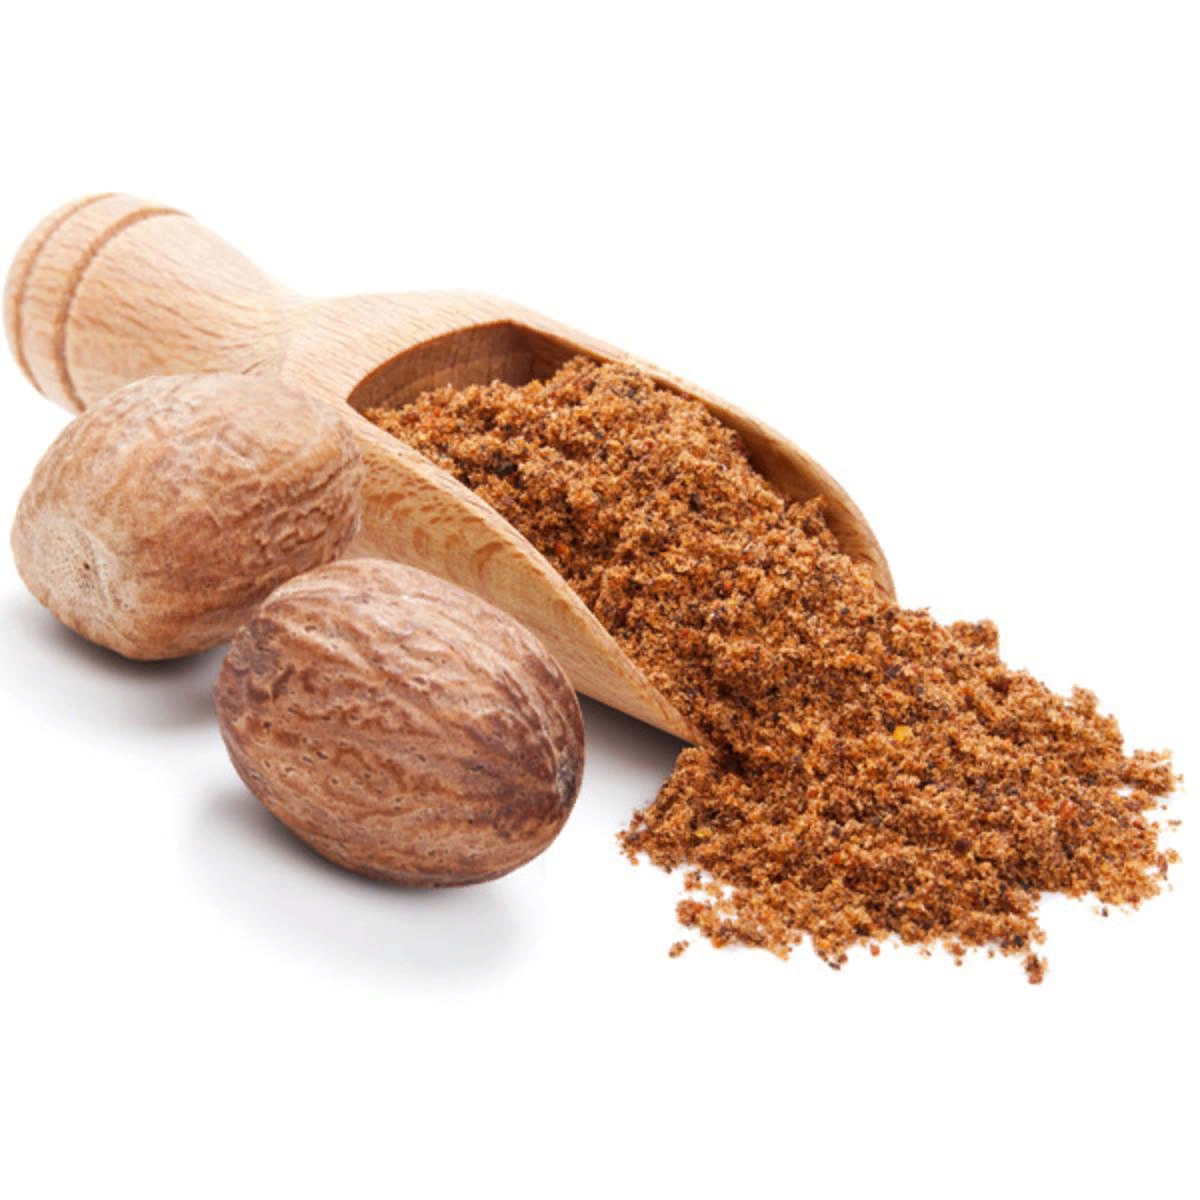 Мускатный орех: полезные и вредные свойства, как употреблять мускатный орех. состав, показания и противопоказания к употреблению